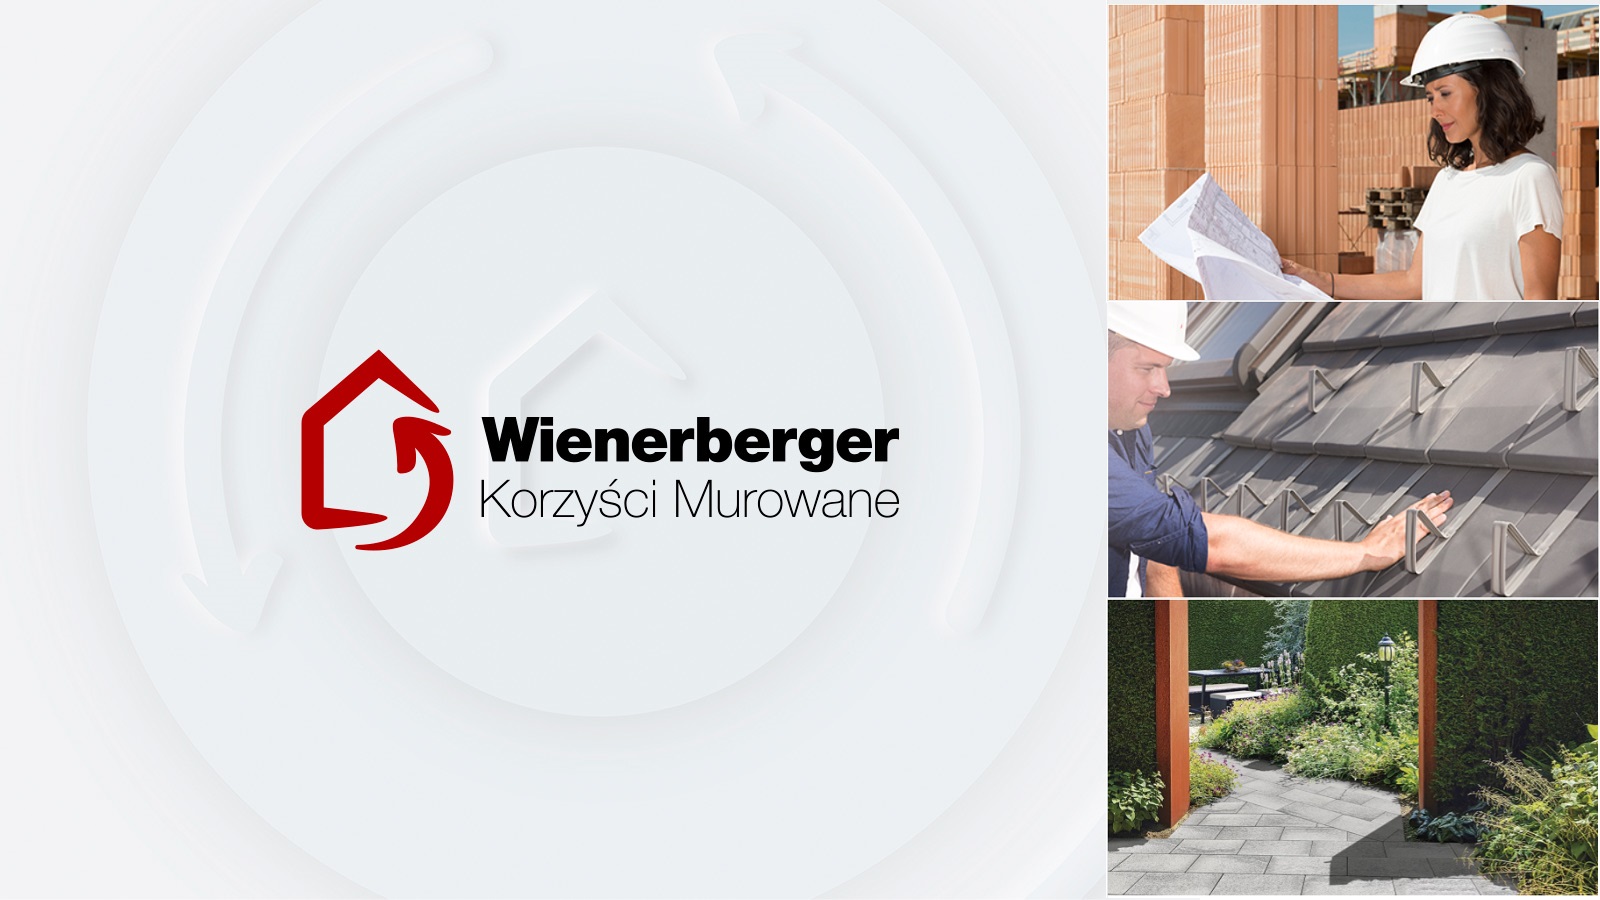 Znana promocja konsumencka Wienerberger Korzyści Murowane została teraz rozszerzona o wybrane produkty z oferty Semmelrock.